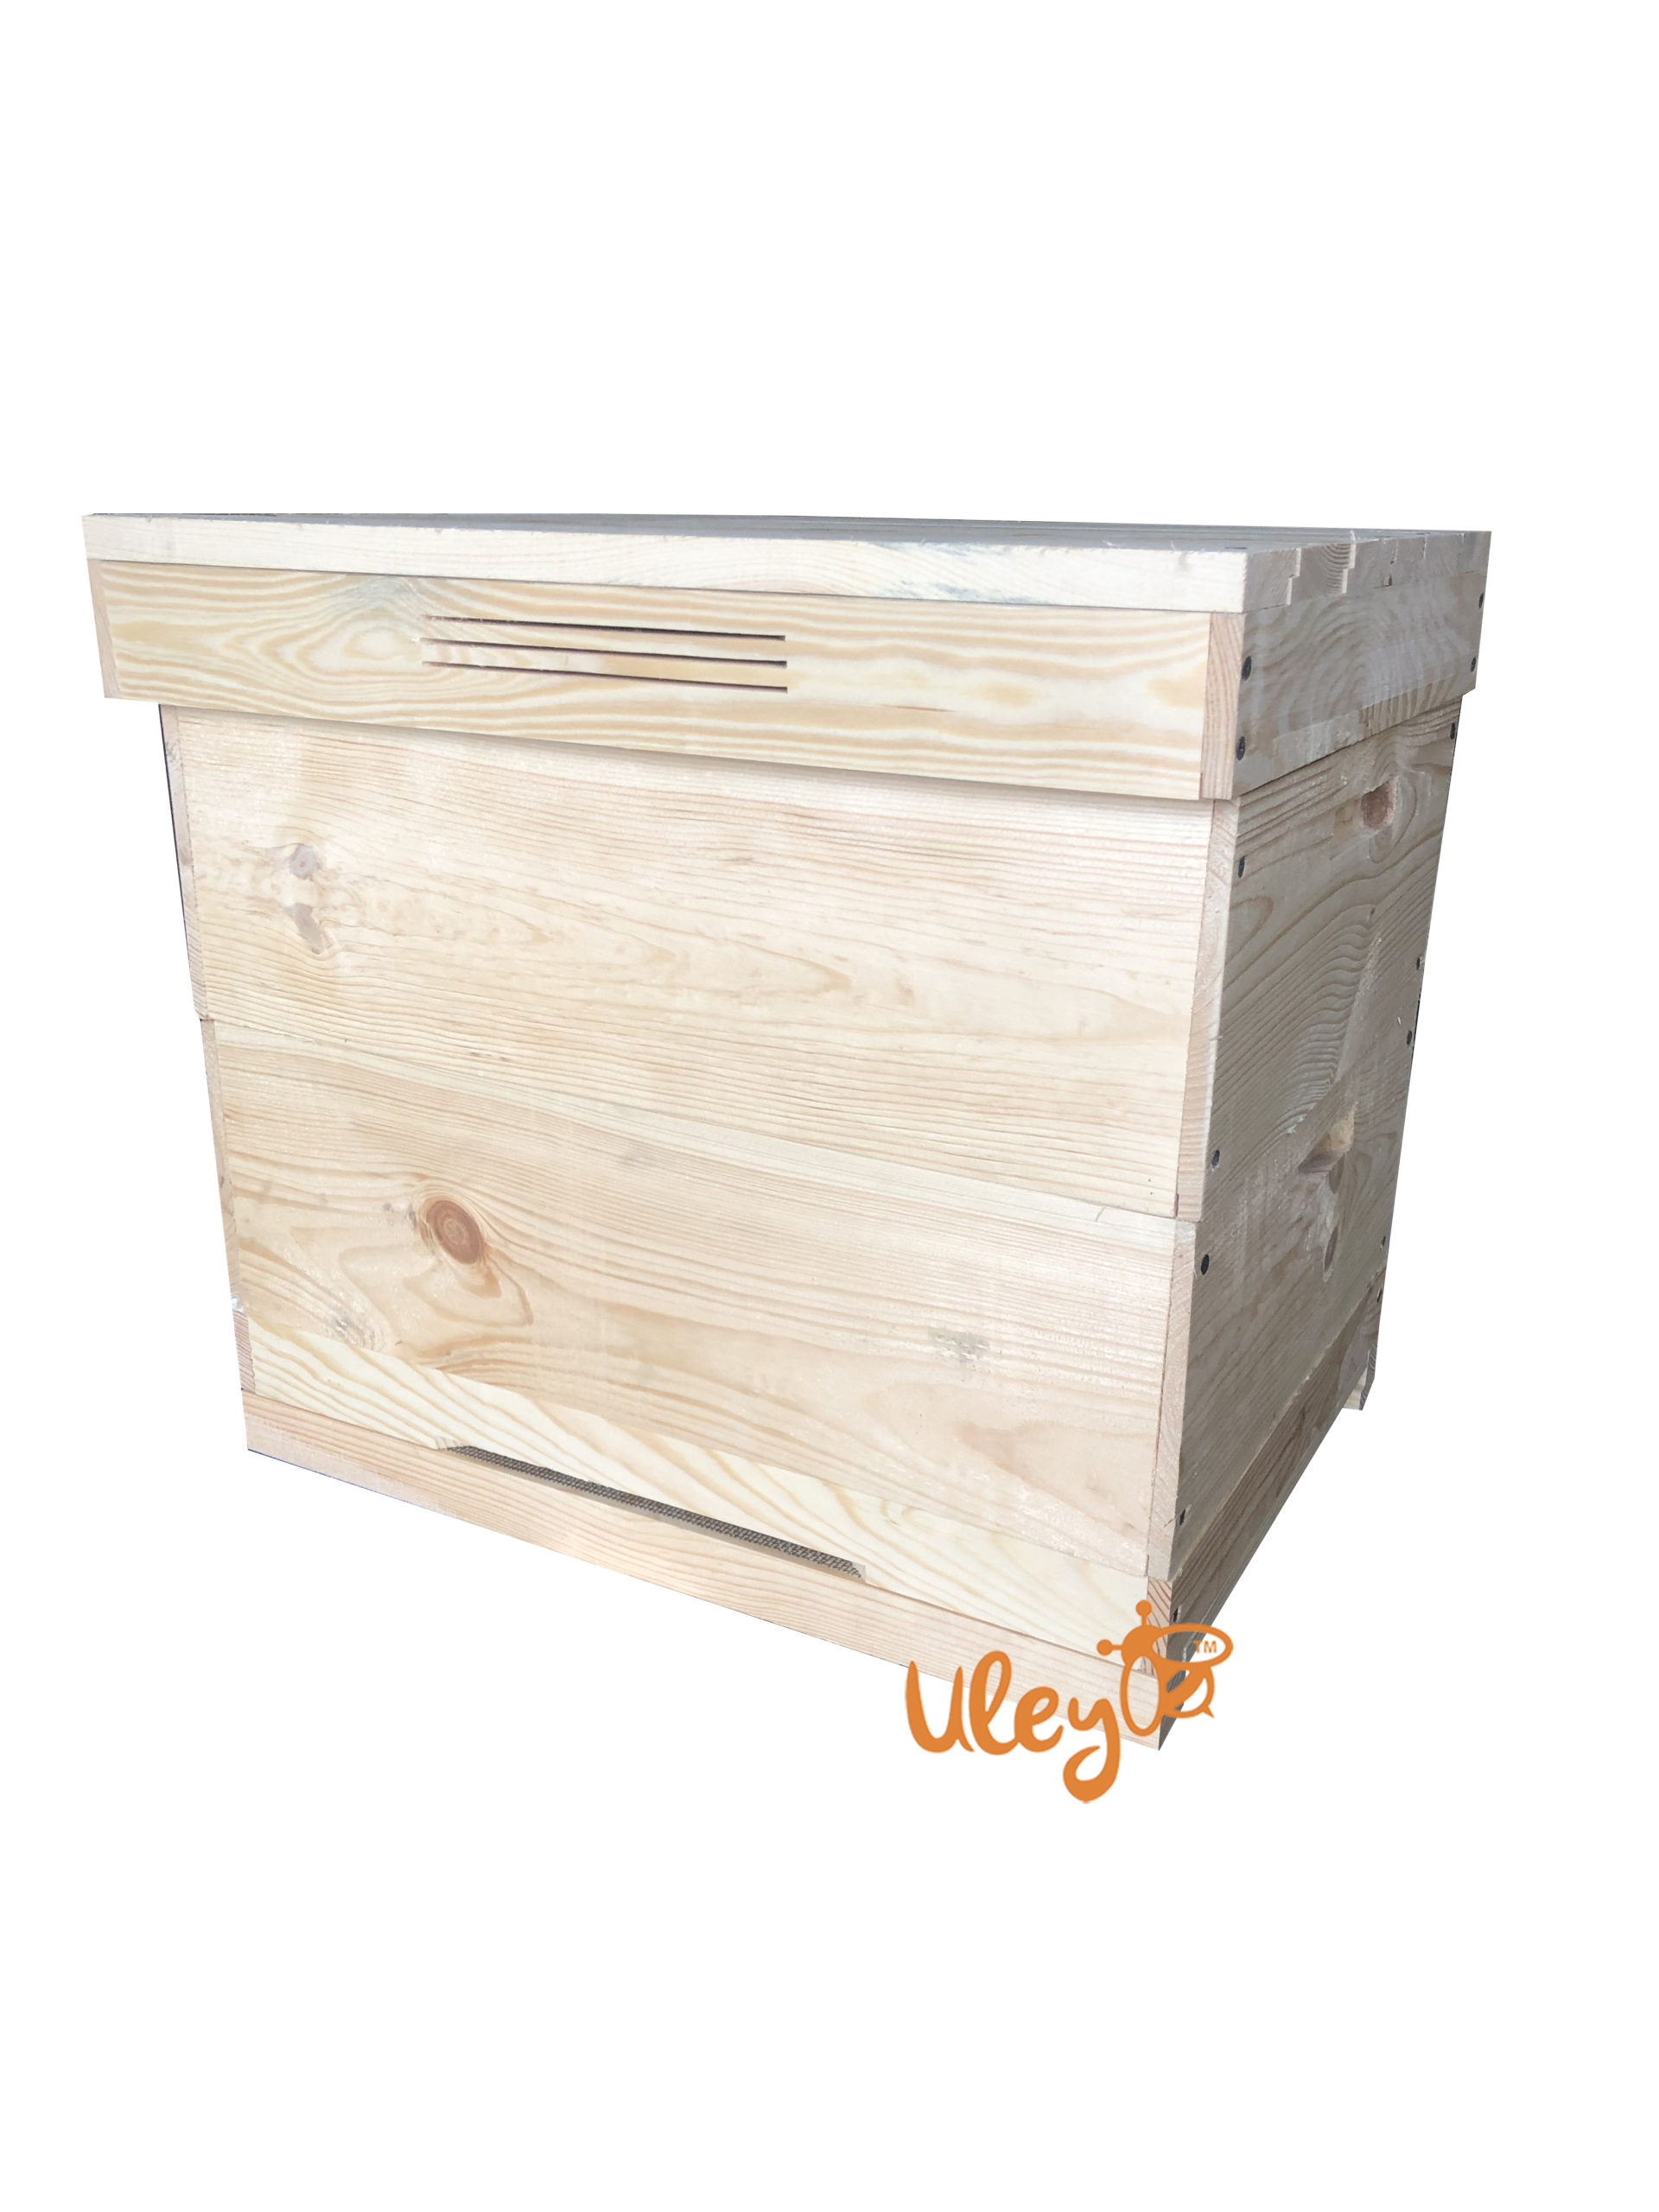 Пошаговые инструкции разведения пчёл из пчёлопакета в многокорпусном улье на рамку 145 мм.